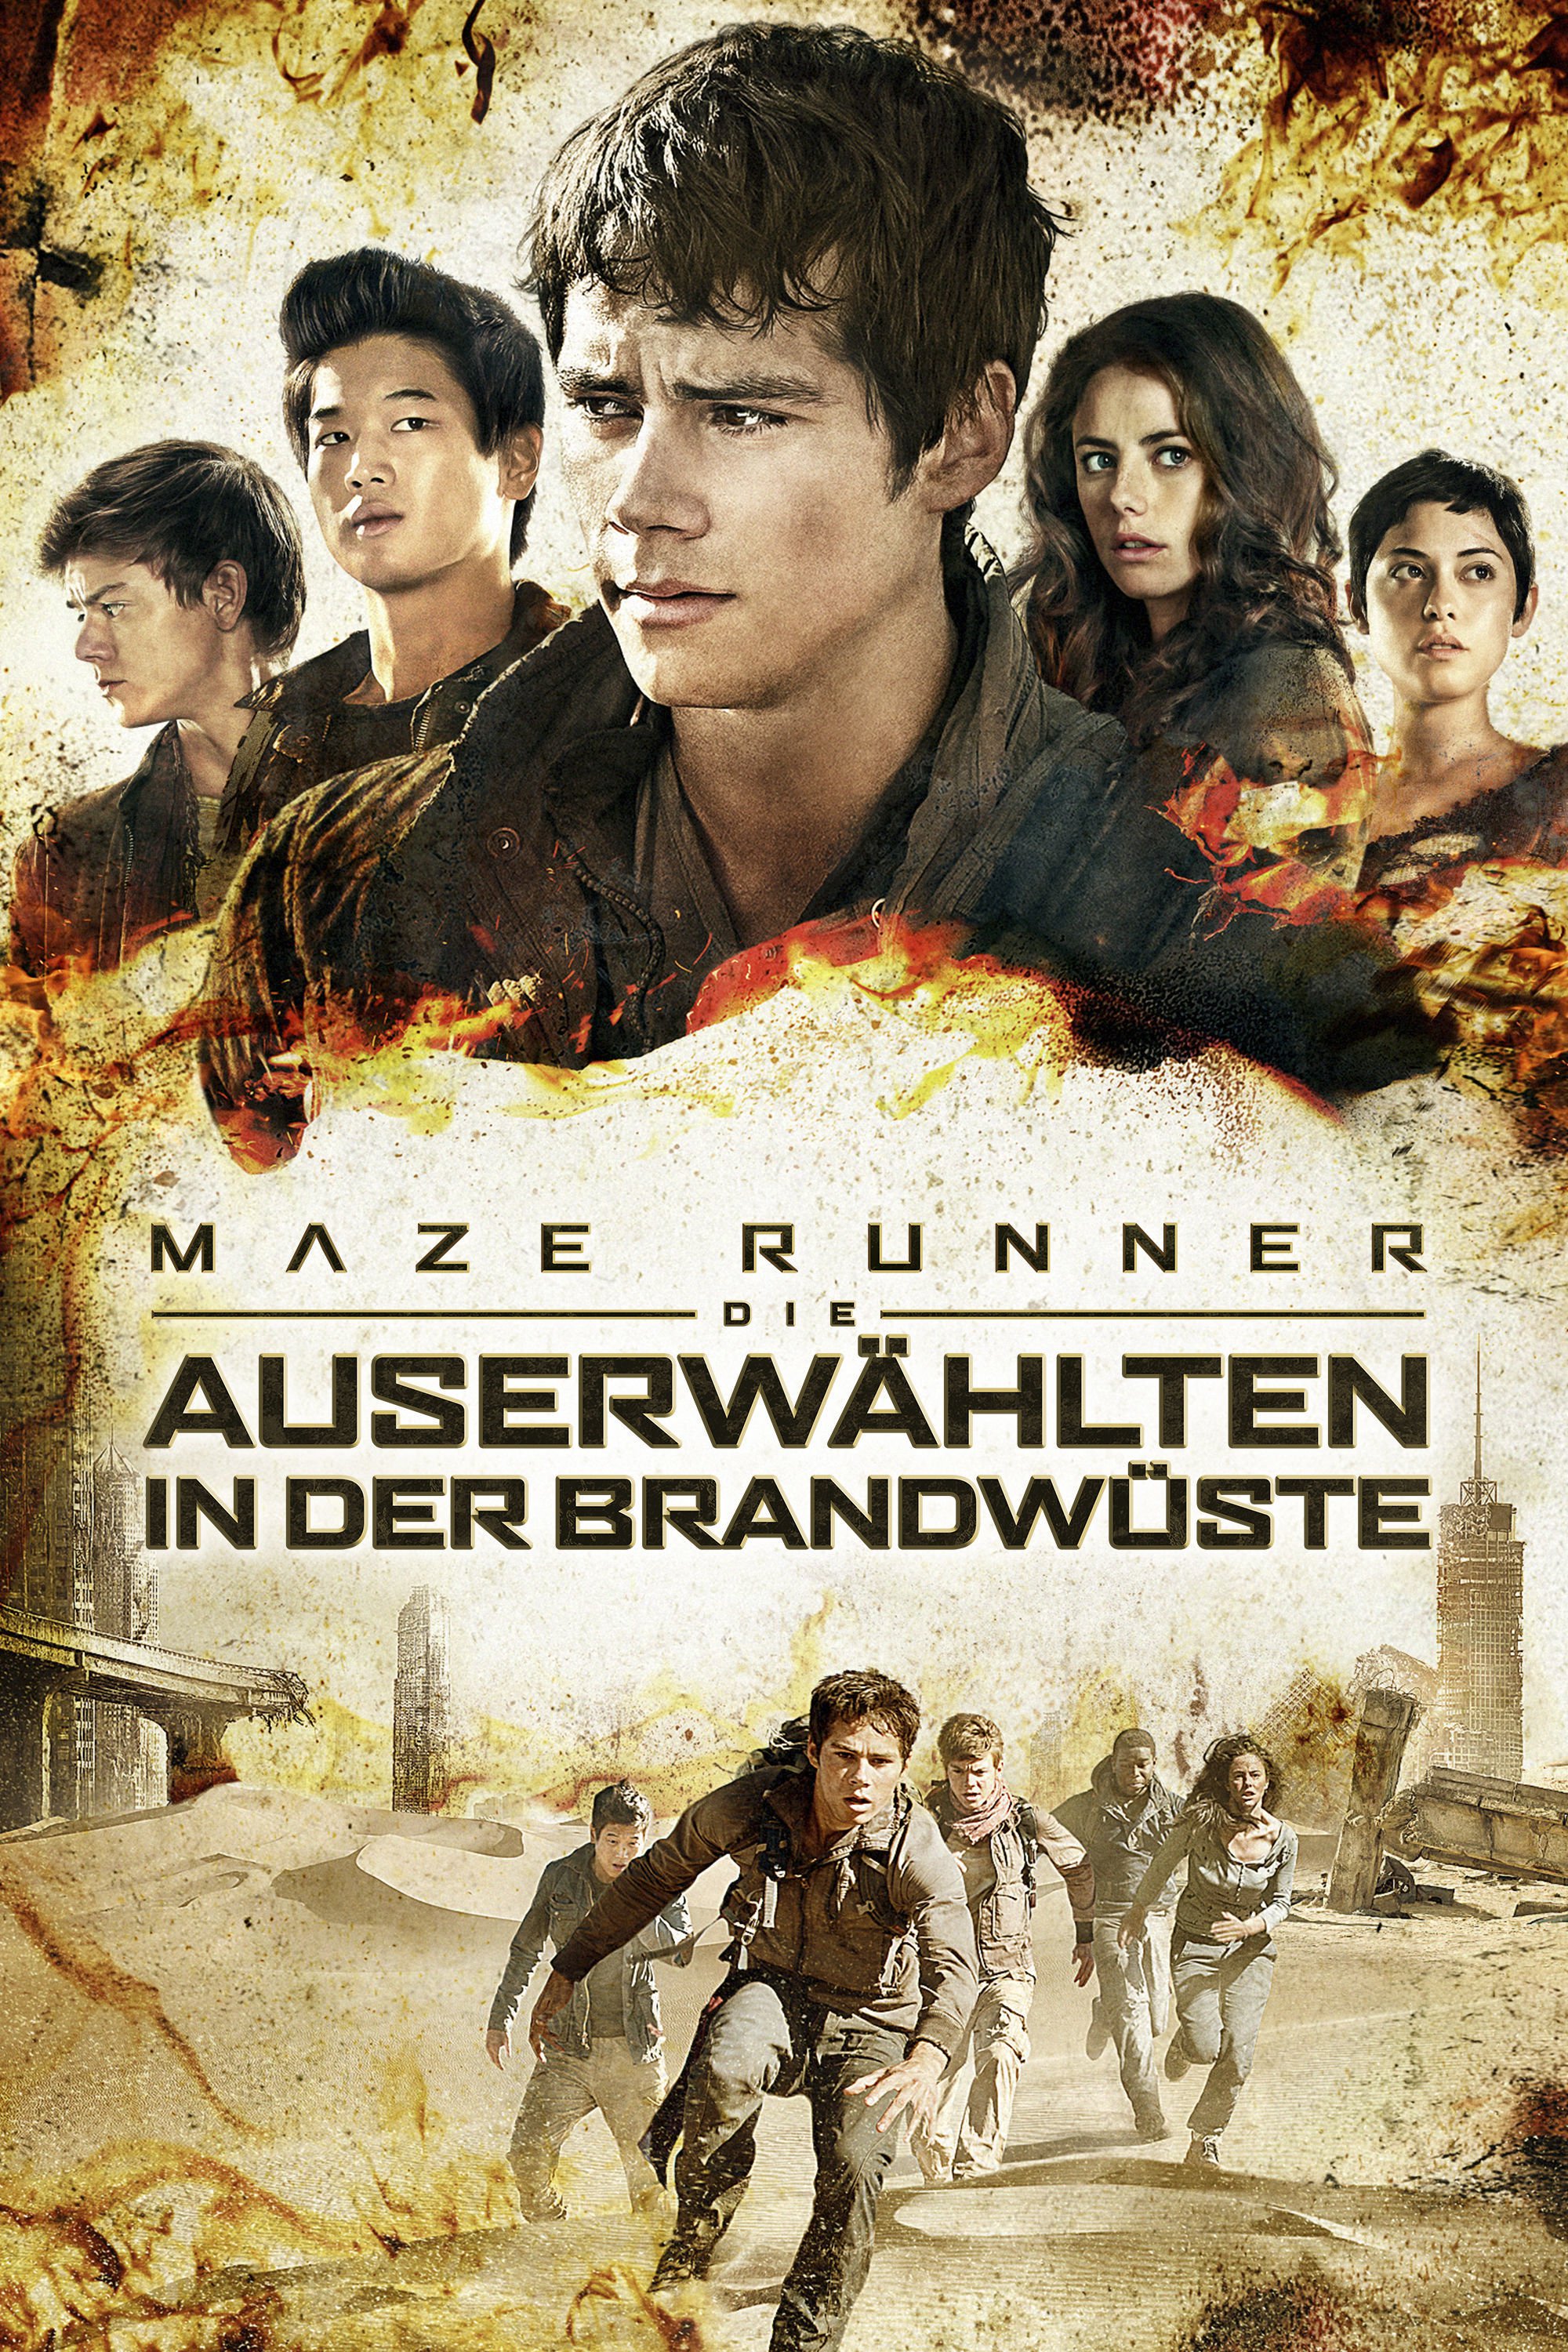 Plakat von "Maze Runner - Die Auserwählten in der Brandwüste"